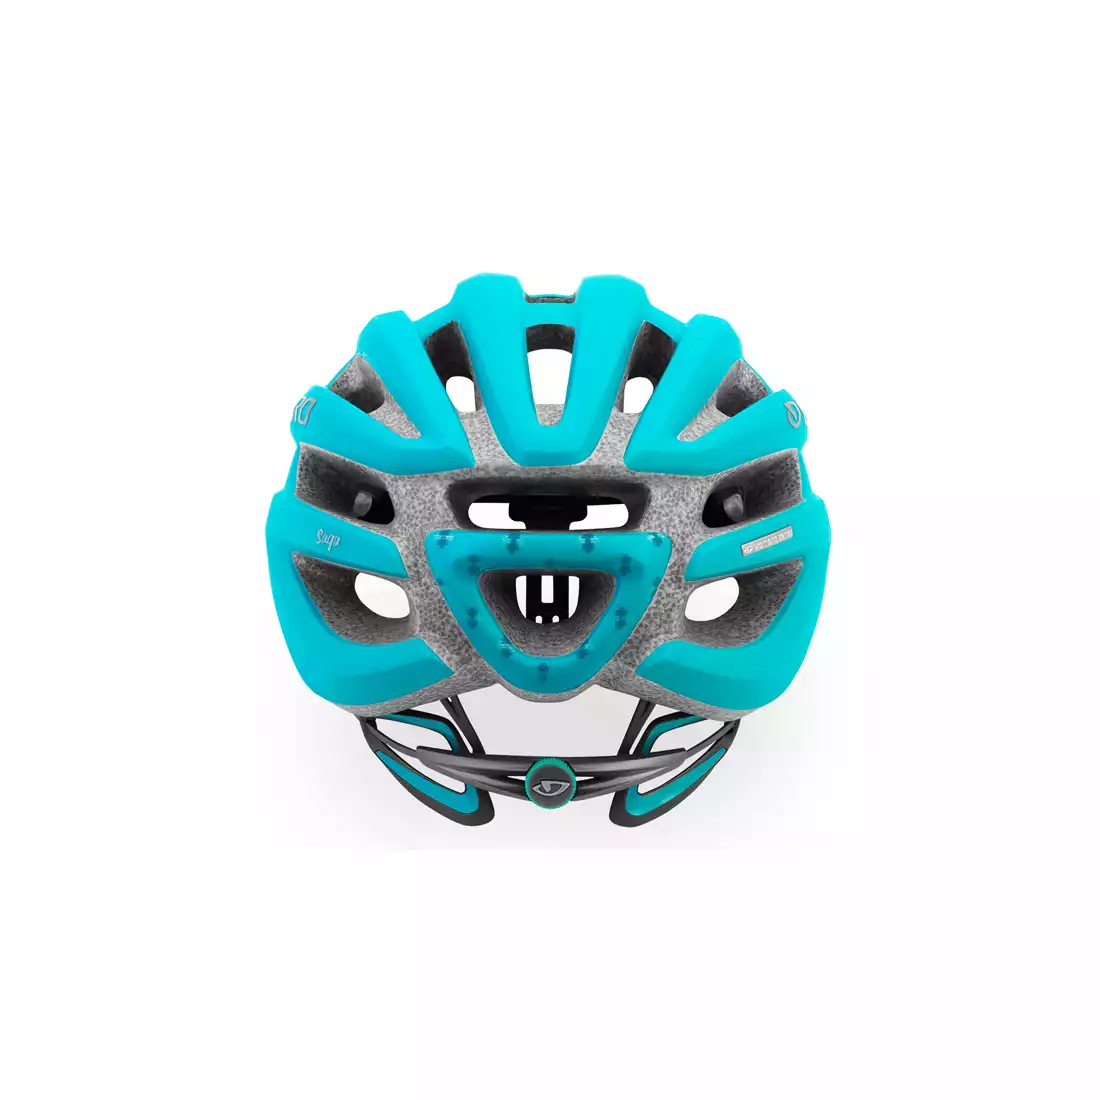 GIRO SAGA - damski kask rowerowy niebieski